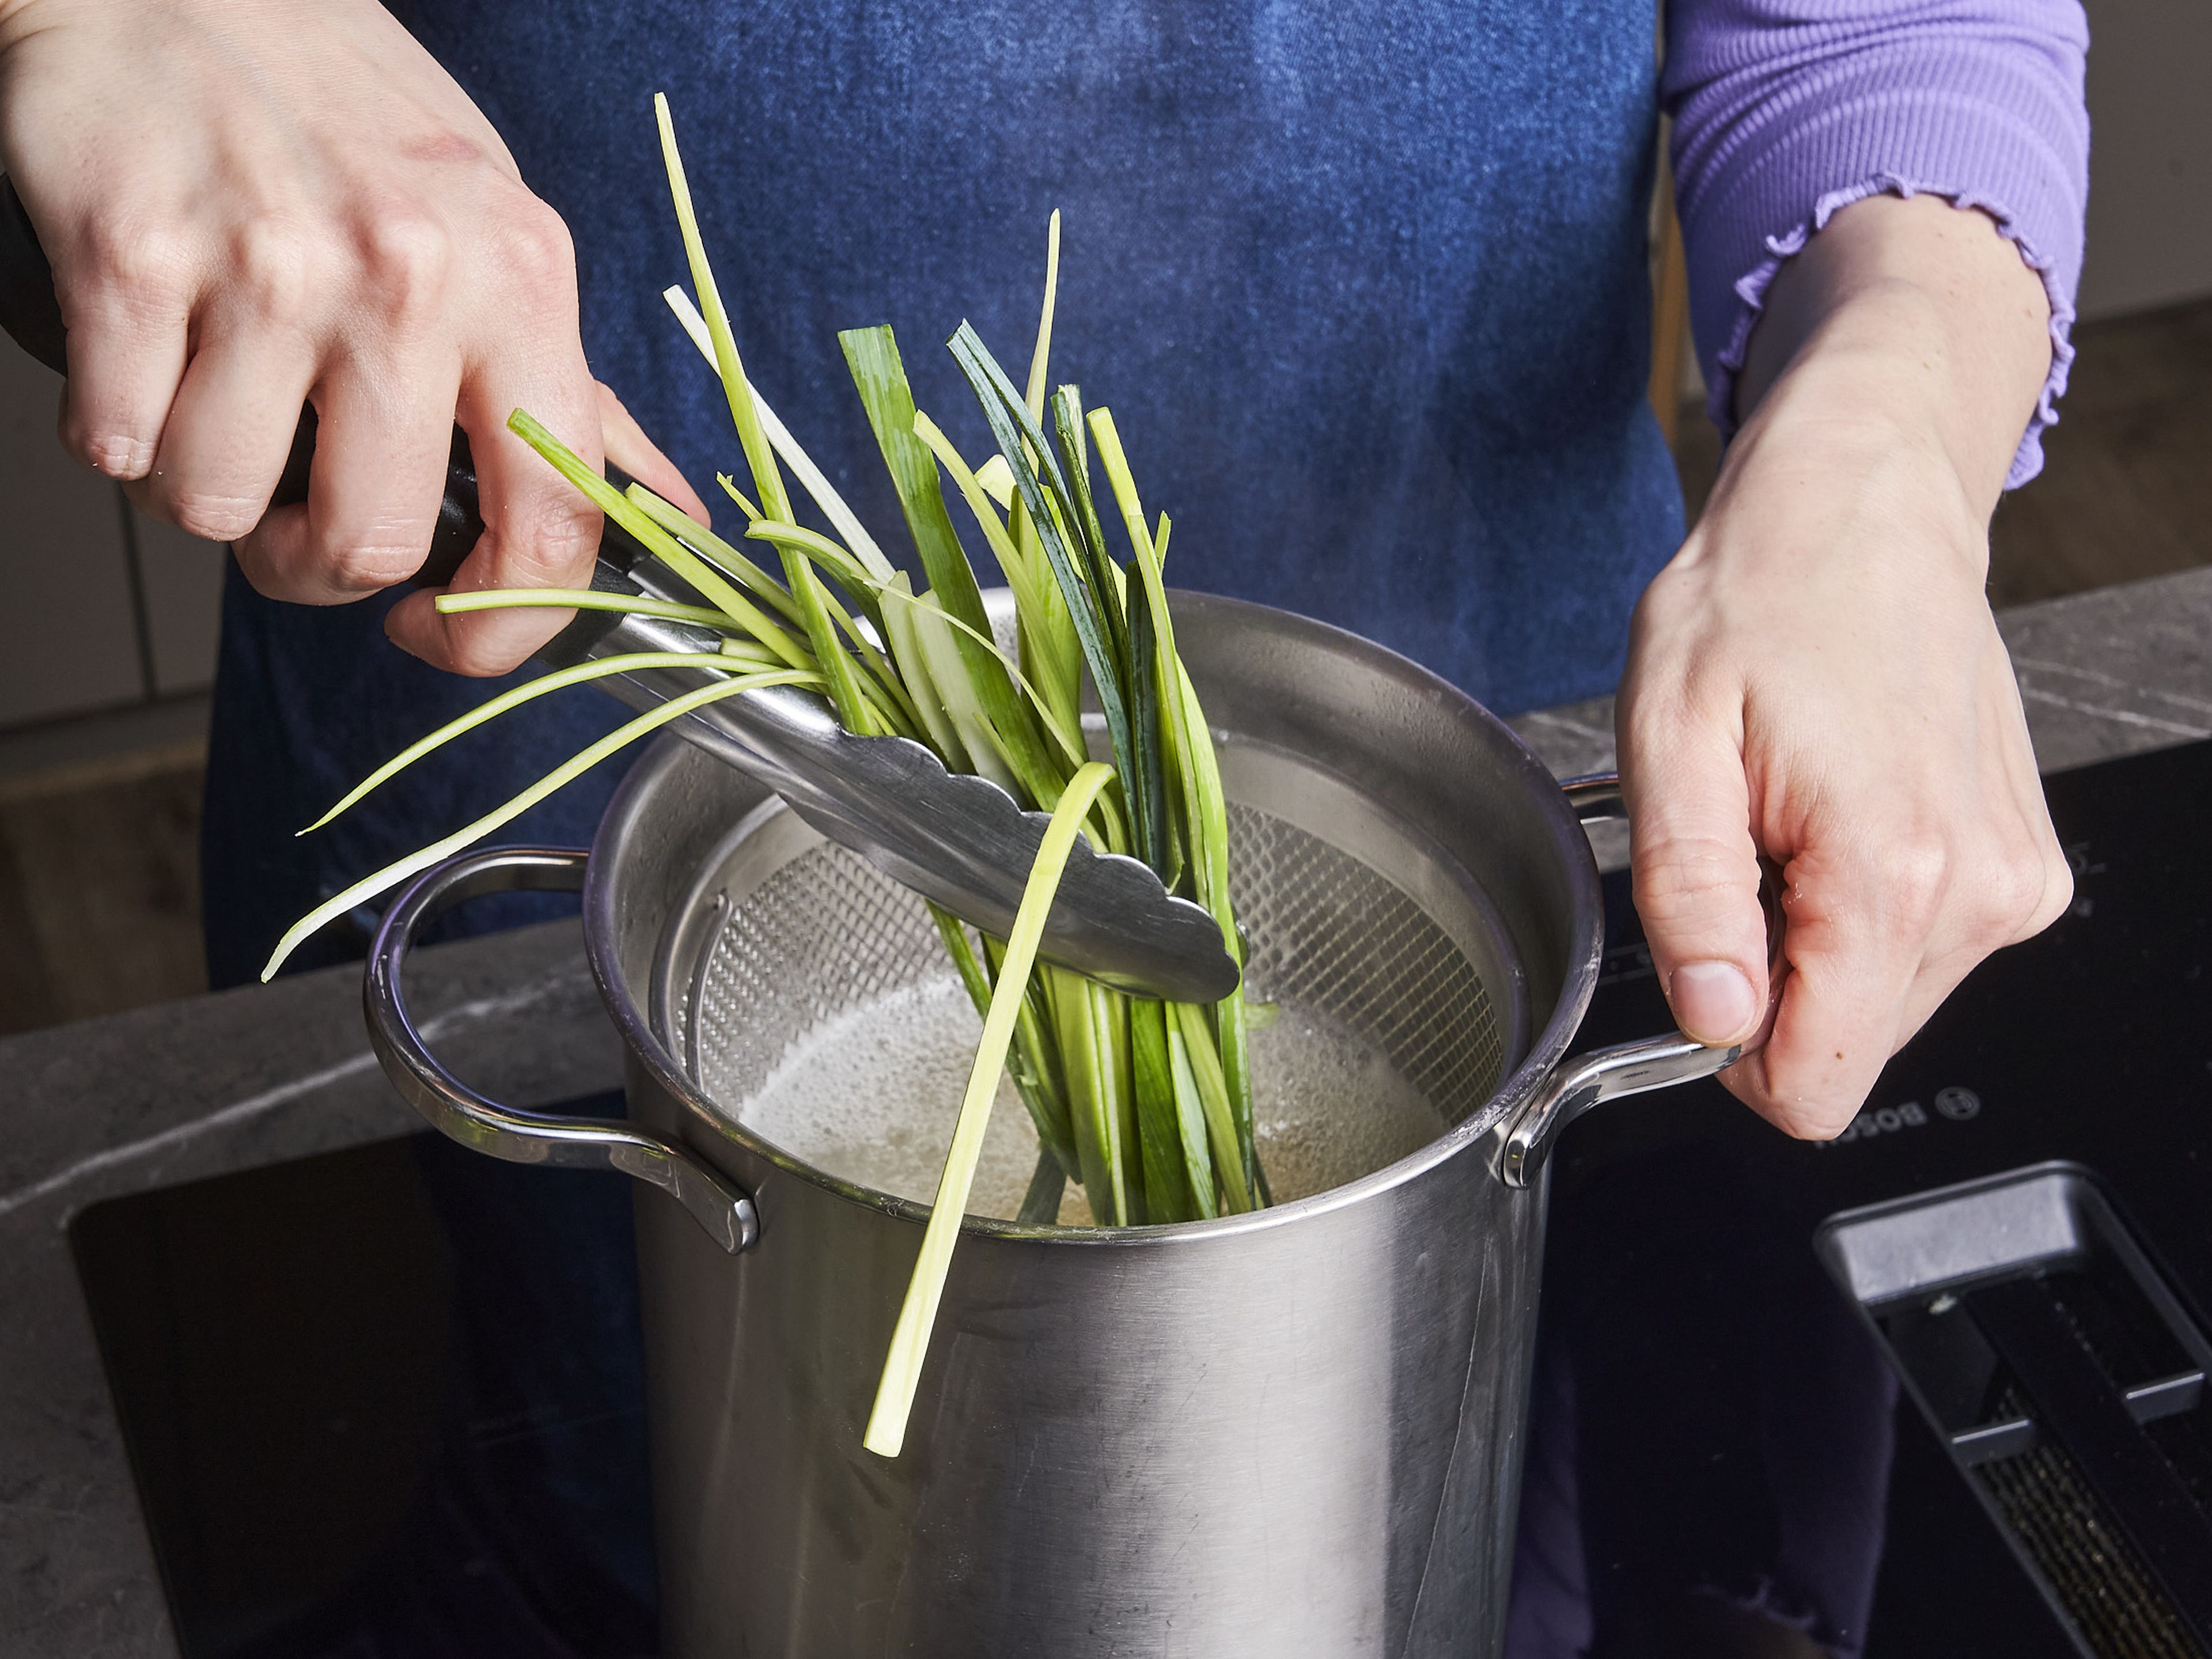 Etwas Olivenöl in einer Pfanne erhitzen und den weißen Teil des Lauchs hinzufügen. Mit Salz würzen und ca. 5–8 Min. bei mittlerer Hitze braten. Butter dazugeben und schmelzen lassen. In der Zwischenzeit die Spaghetti nach Packungsanweisung kochen. Ca. 1 Min. vor Ende der Garzeit die grünen Lauchstreifen dazugeben und mitkochen. Dann abgießen und dabei etwas Nudelwasser auffangen.